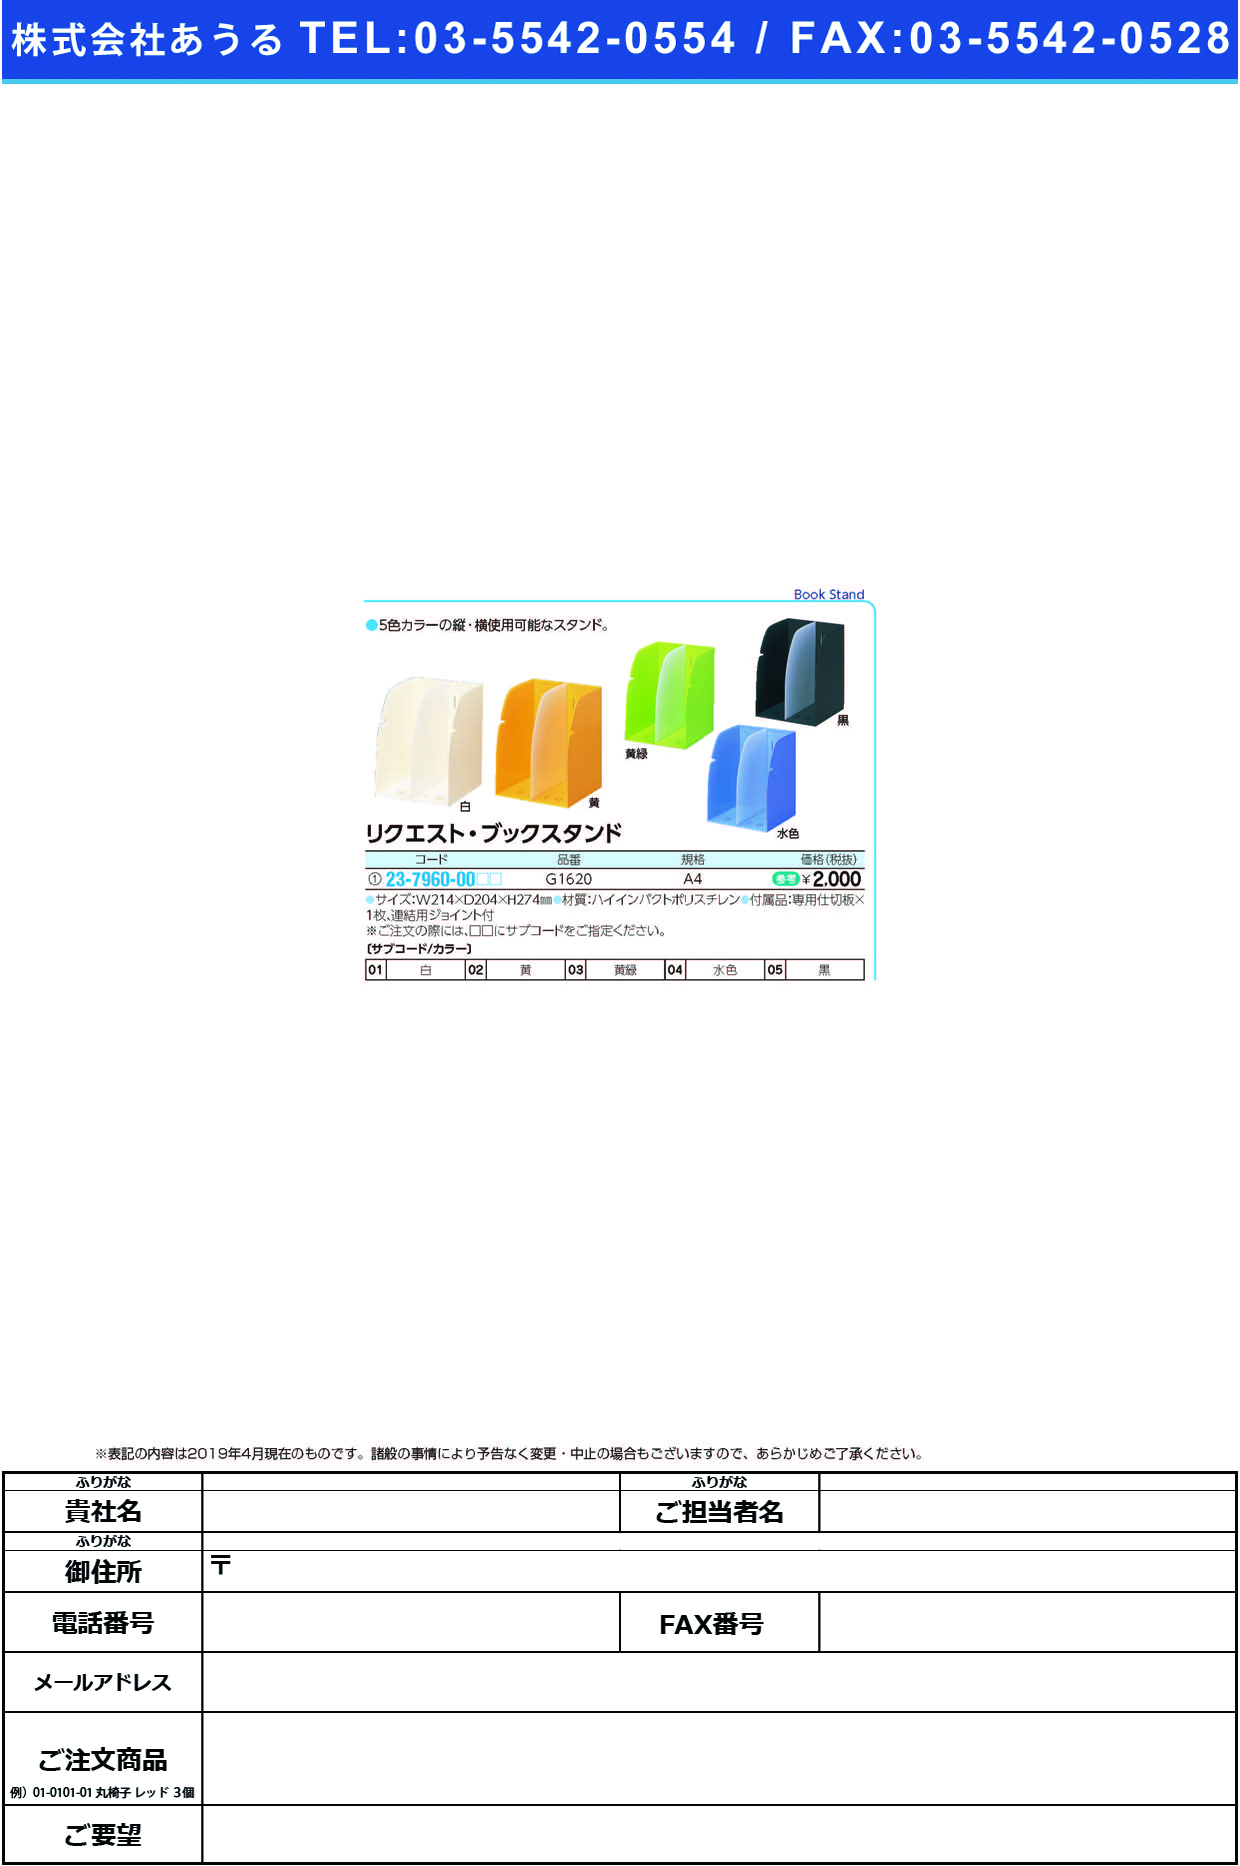 (23-7960-00)リクエストブックスタンド G1620(A4) ﾘｸｴｽﾄﾌﾞｯｸｽﾀﾝﾄﾞ 水色(ＬＩＨＩＴＬＡＢ．)【1個単位】【2019年カタログ商品】